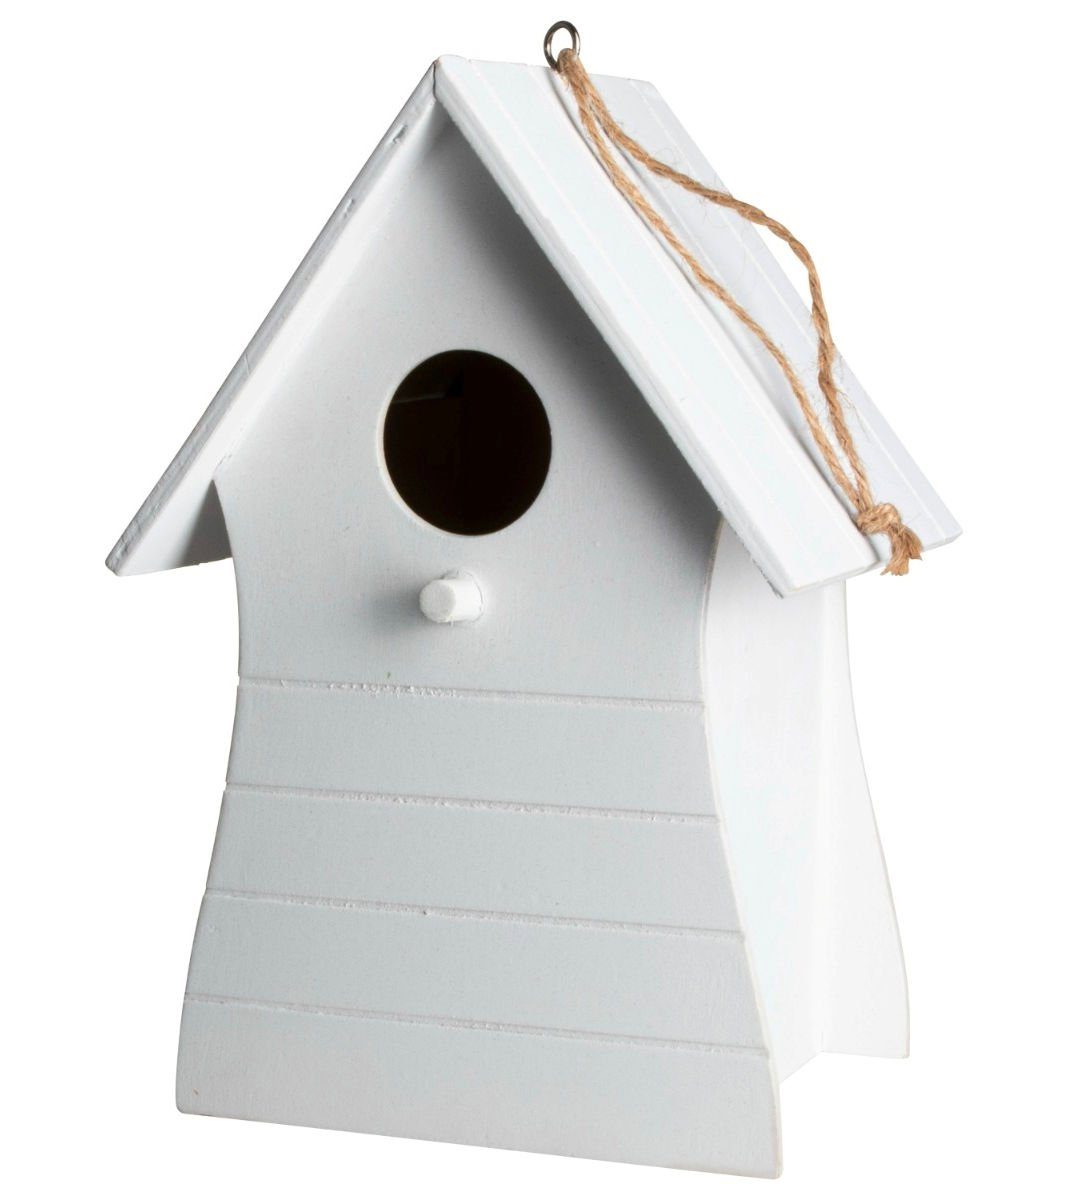 Spetebo Nistkasten Holz Vogelhäuschen zum Aufhängen 20 x 14 cm - weiß, Garten Deko Vogel Nist Kasten mit Fütterungsloch